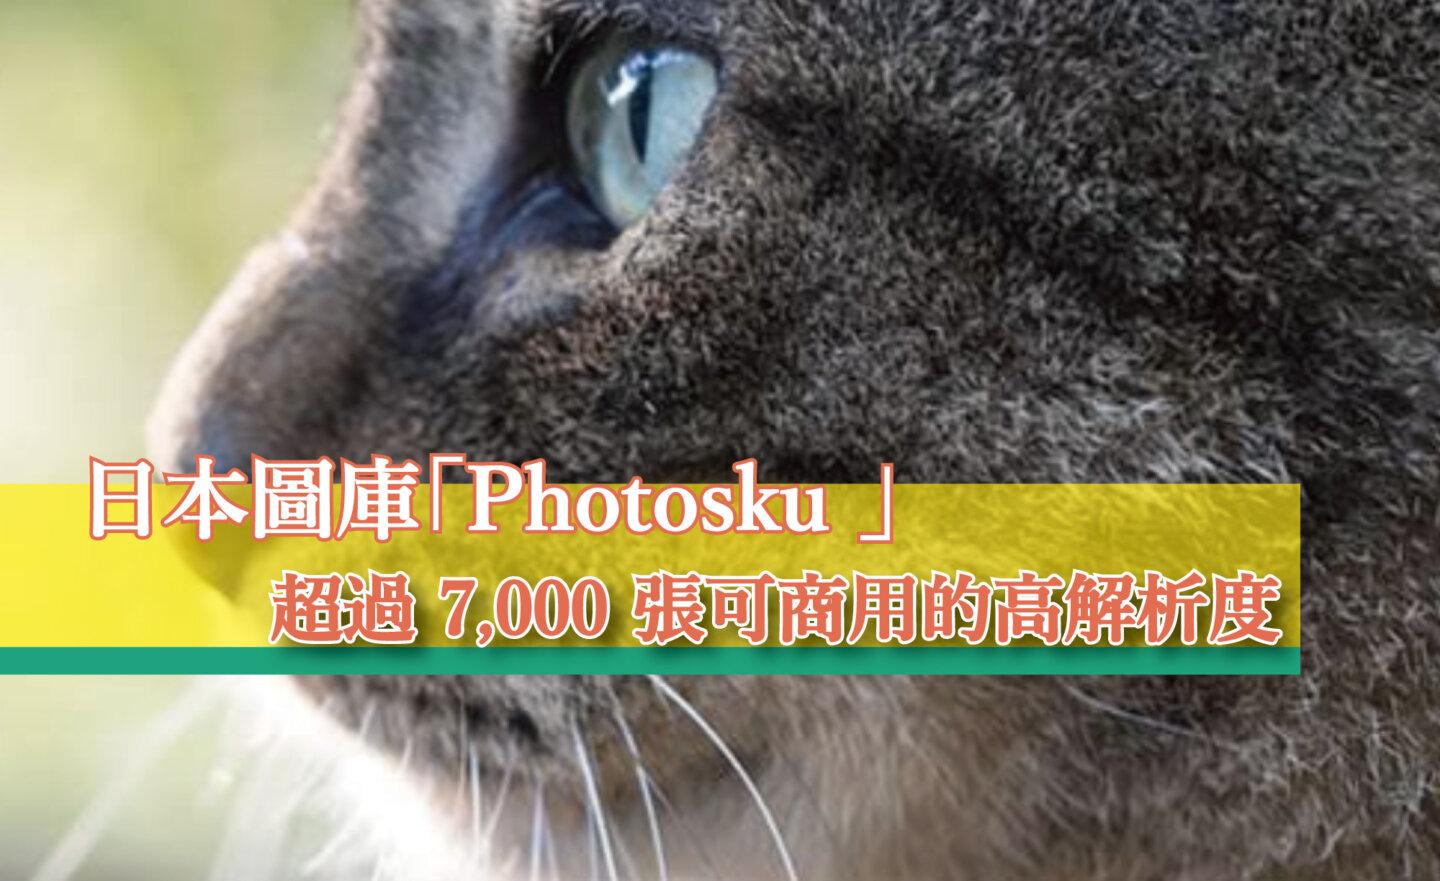 【免費】日本圖庫「Photosku 」，超過 7,000 張可商用的高解析度照片